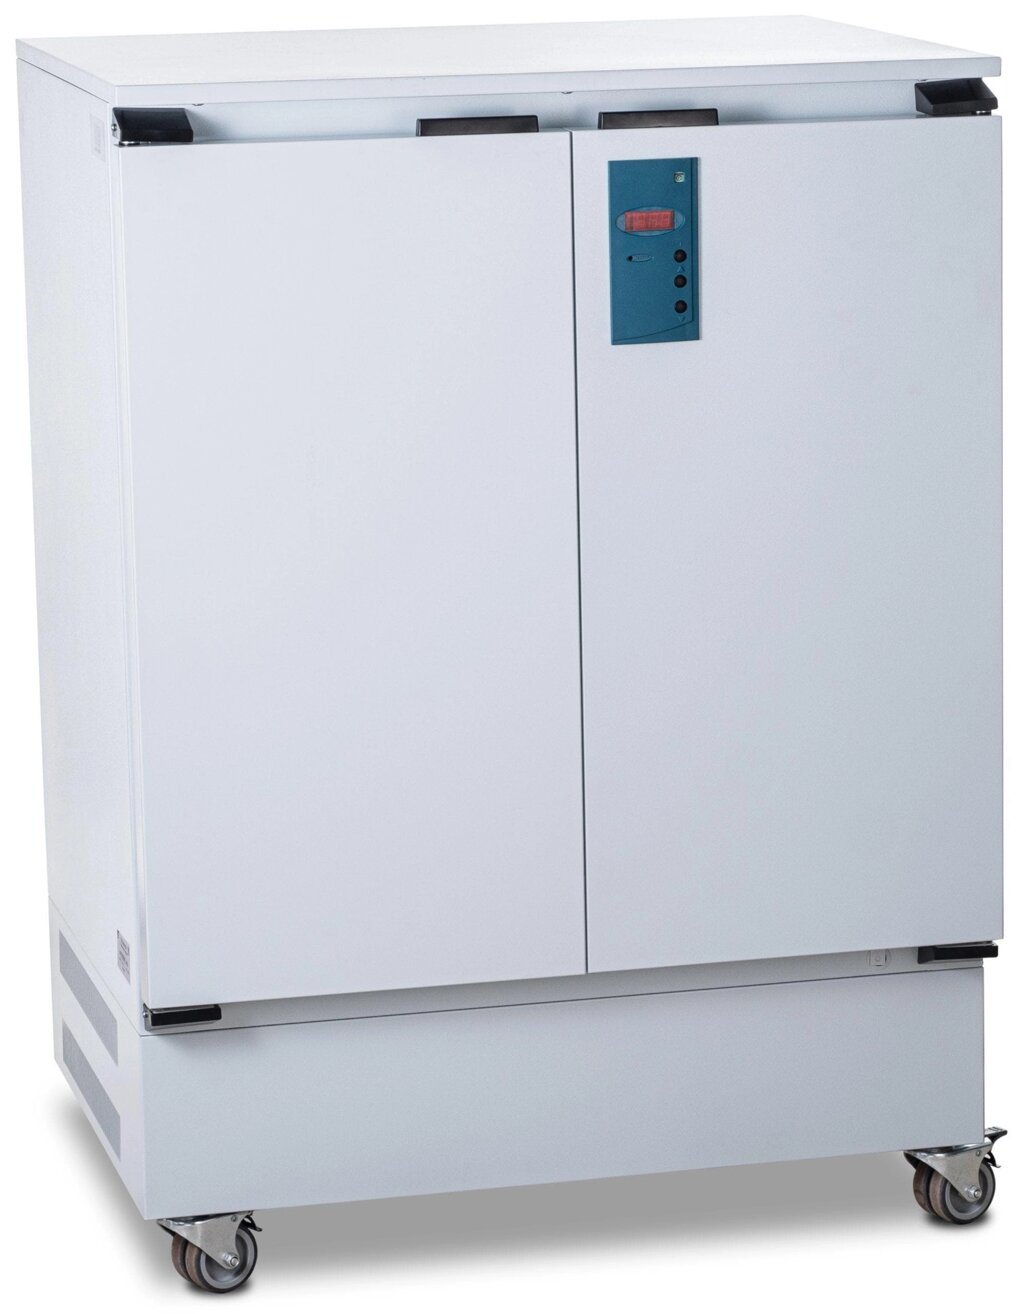 Суховоздушный термостат, 200 литров, 5-60 °С, с охлаждением, лакокрасочное покрытие от компании Labdevices - Лабораторное оборудование и посуда - фото 1